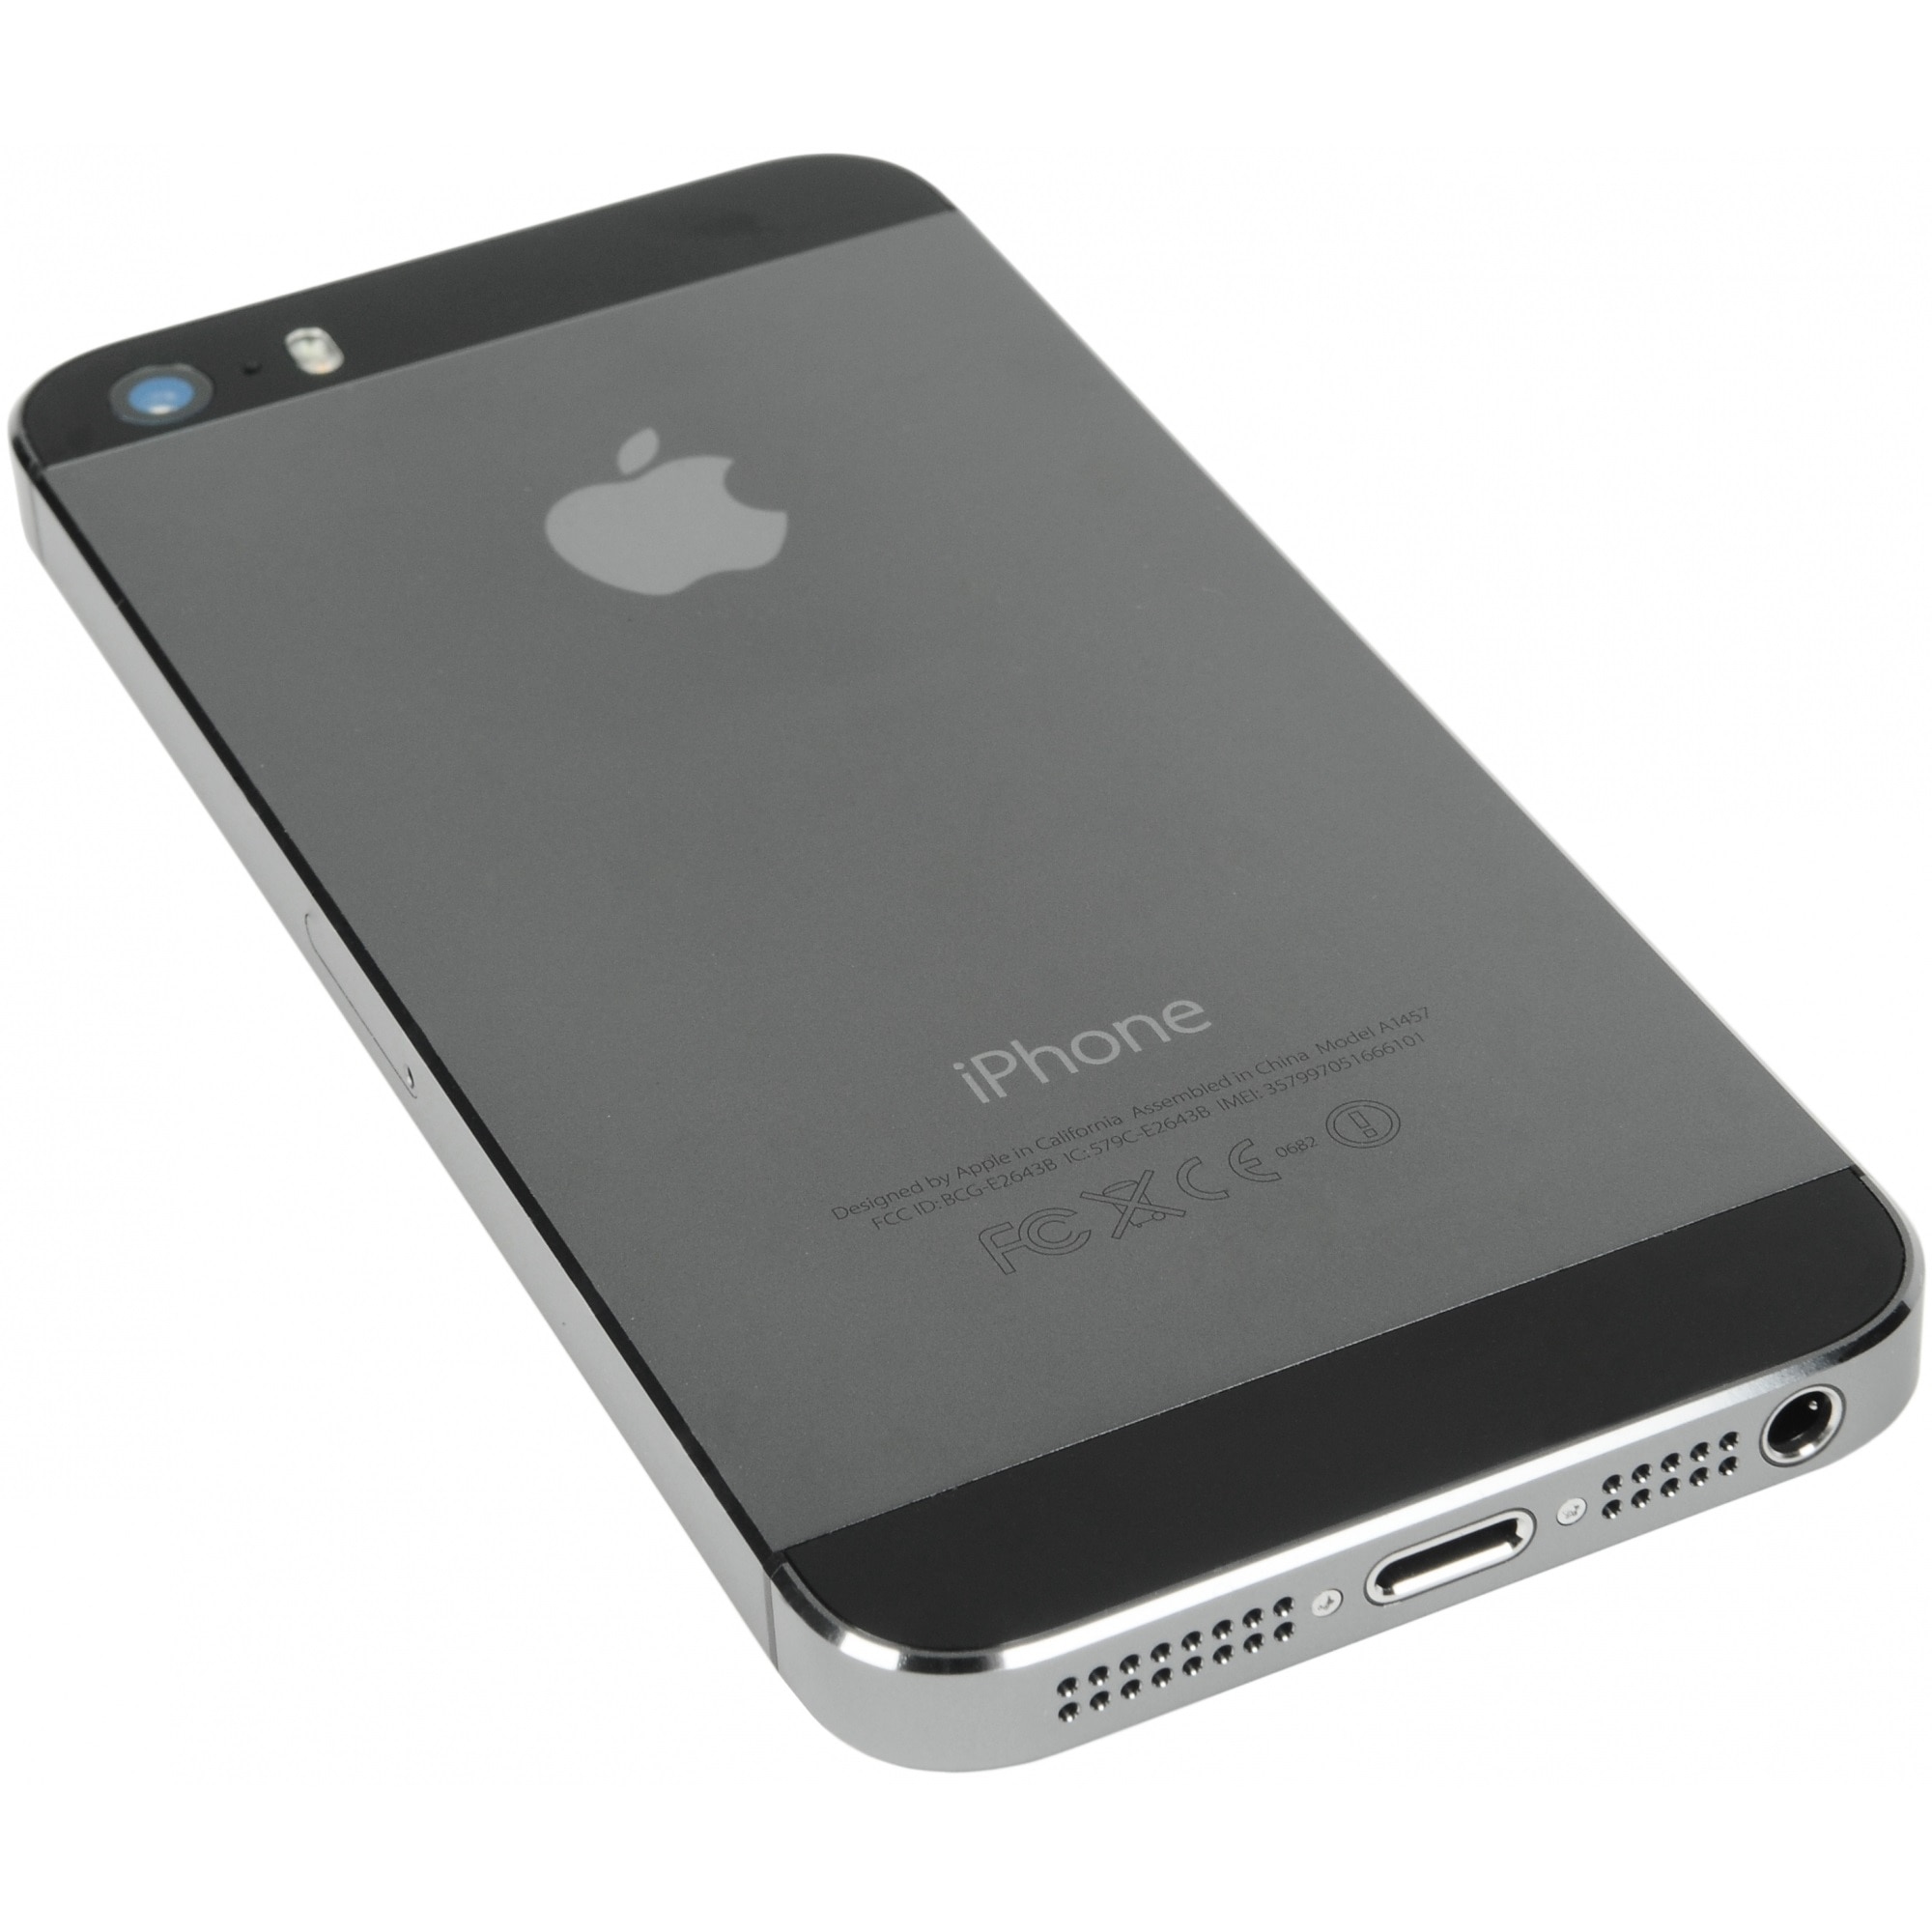 Apple iPhone 5 Black 16GB au スマホ - スマートフォン本体